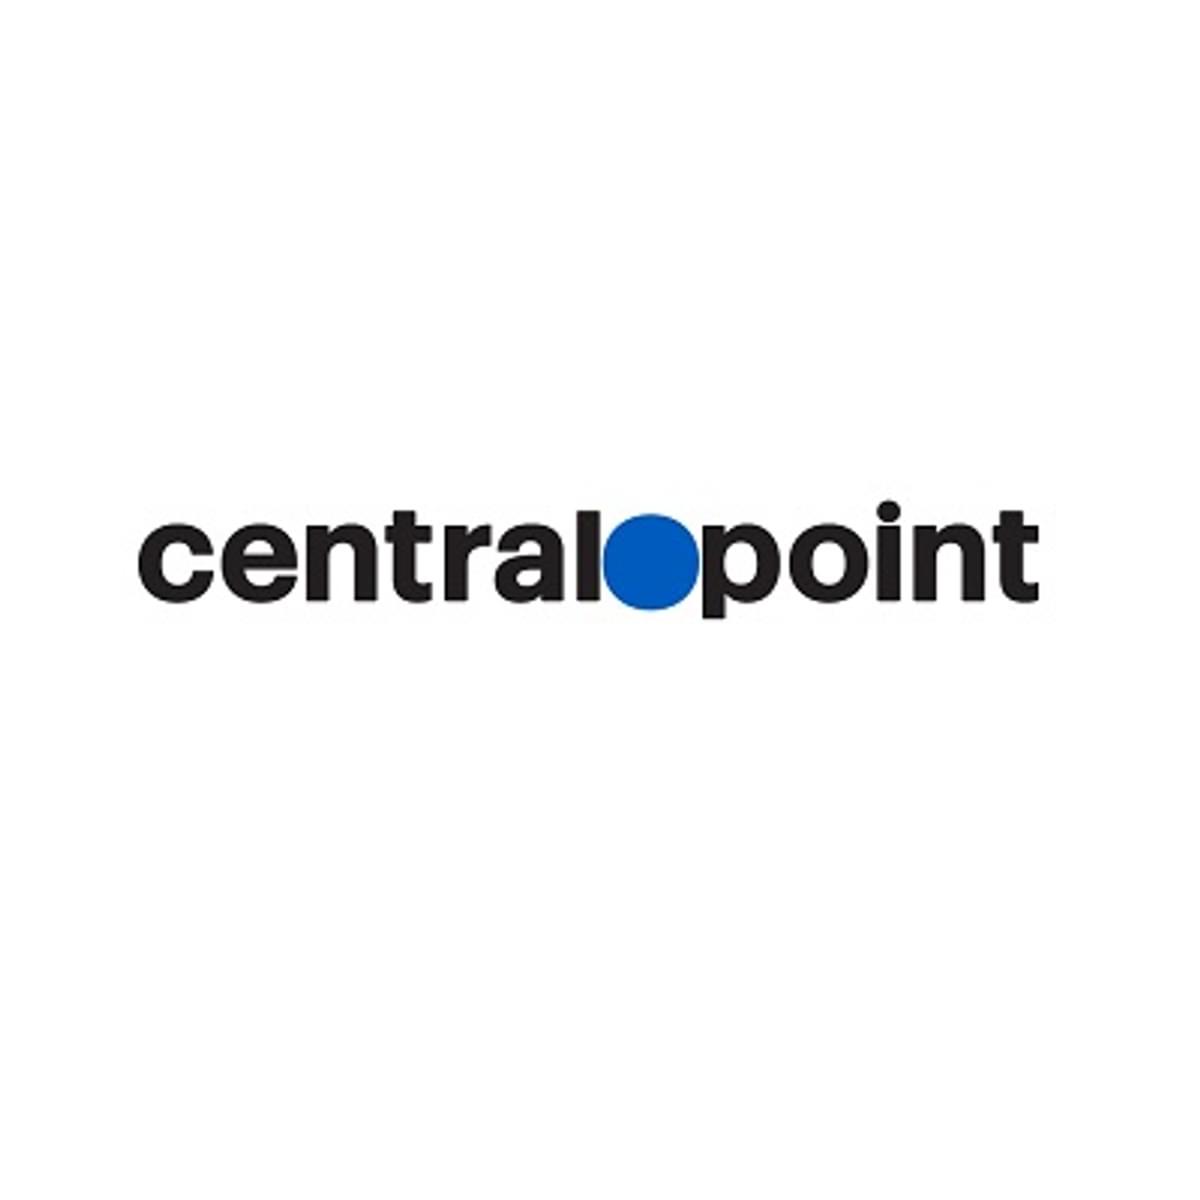 Centralpoint wint aanbesteding ICT-infrastructuur C-Smart image